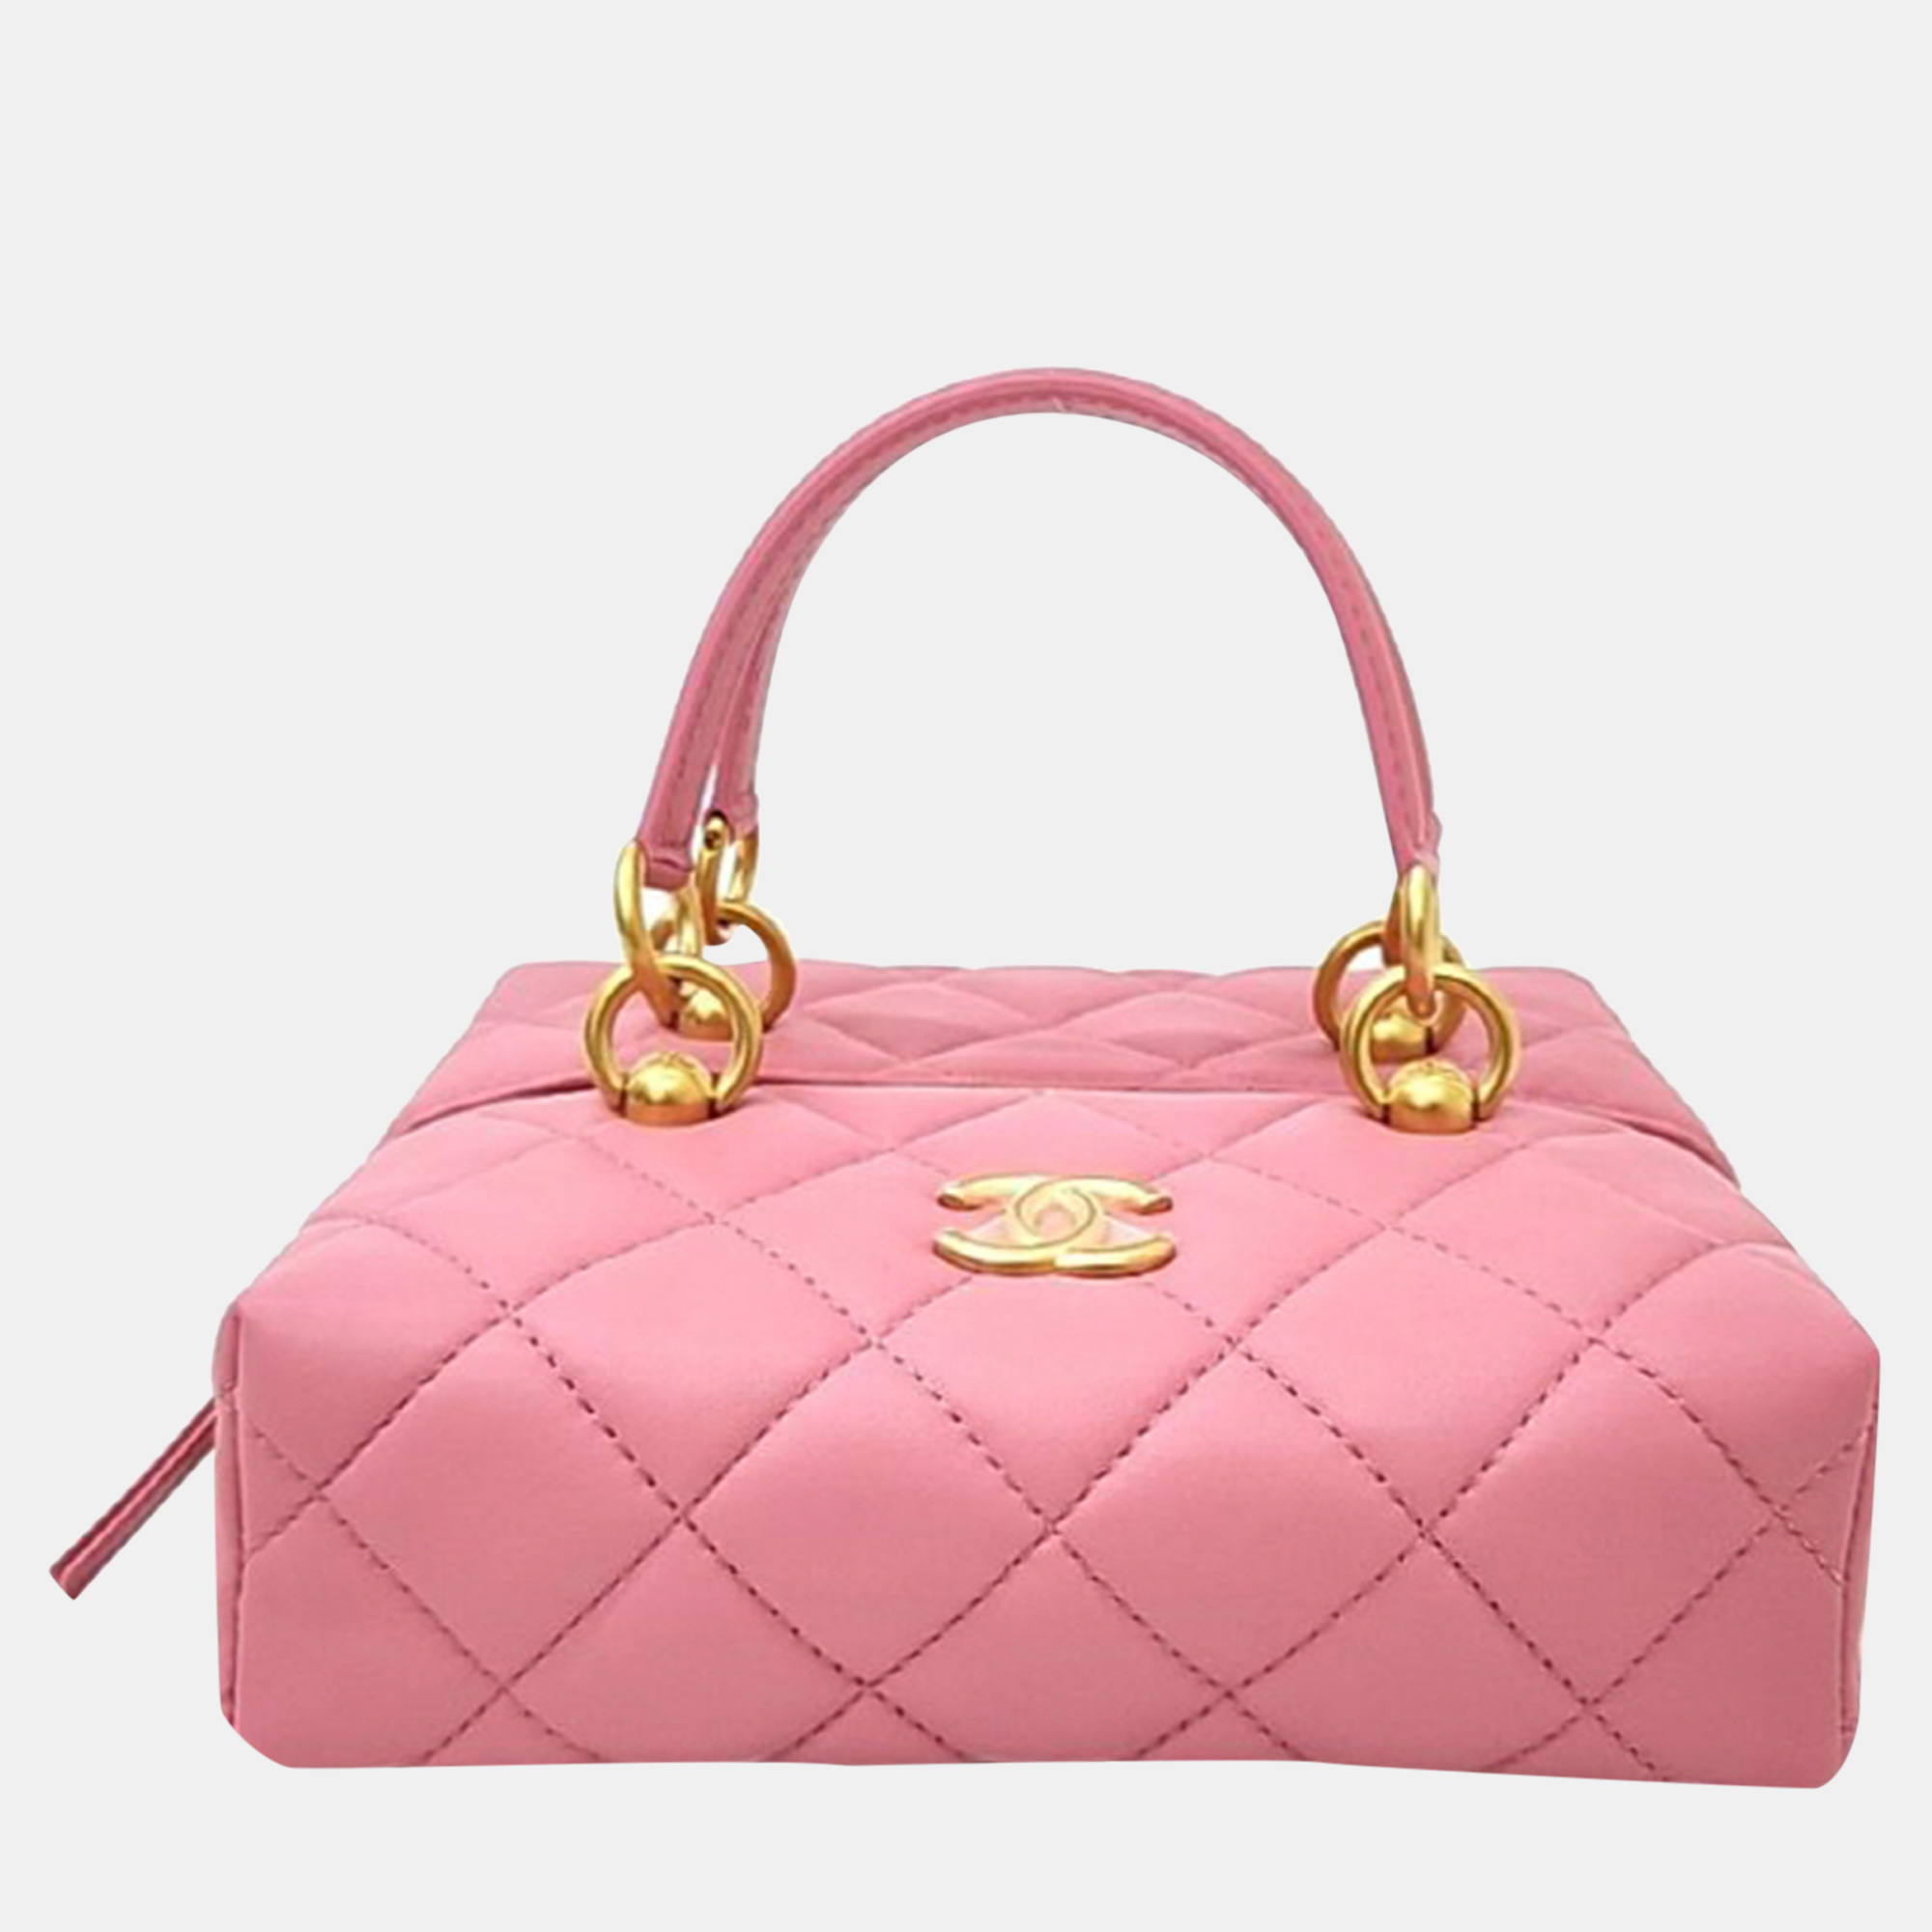 Chanel pink leather shoulder bag